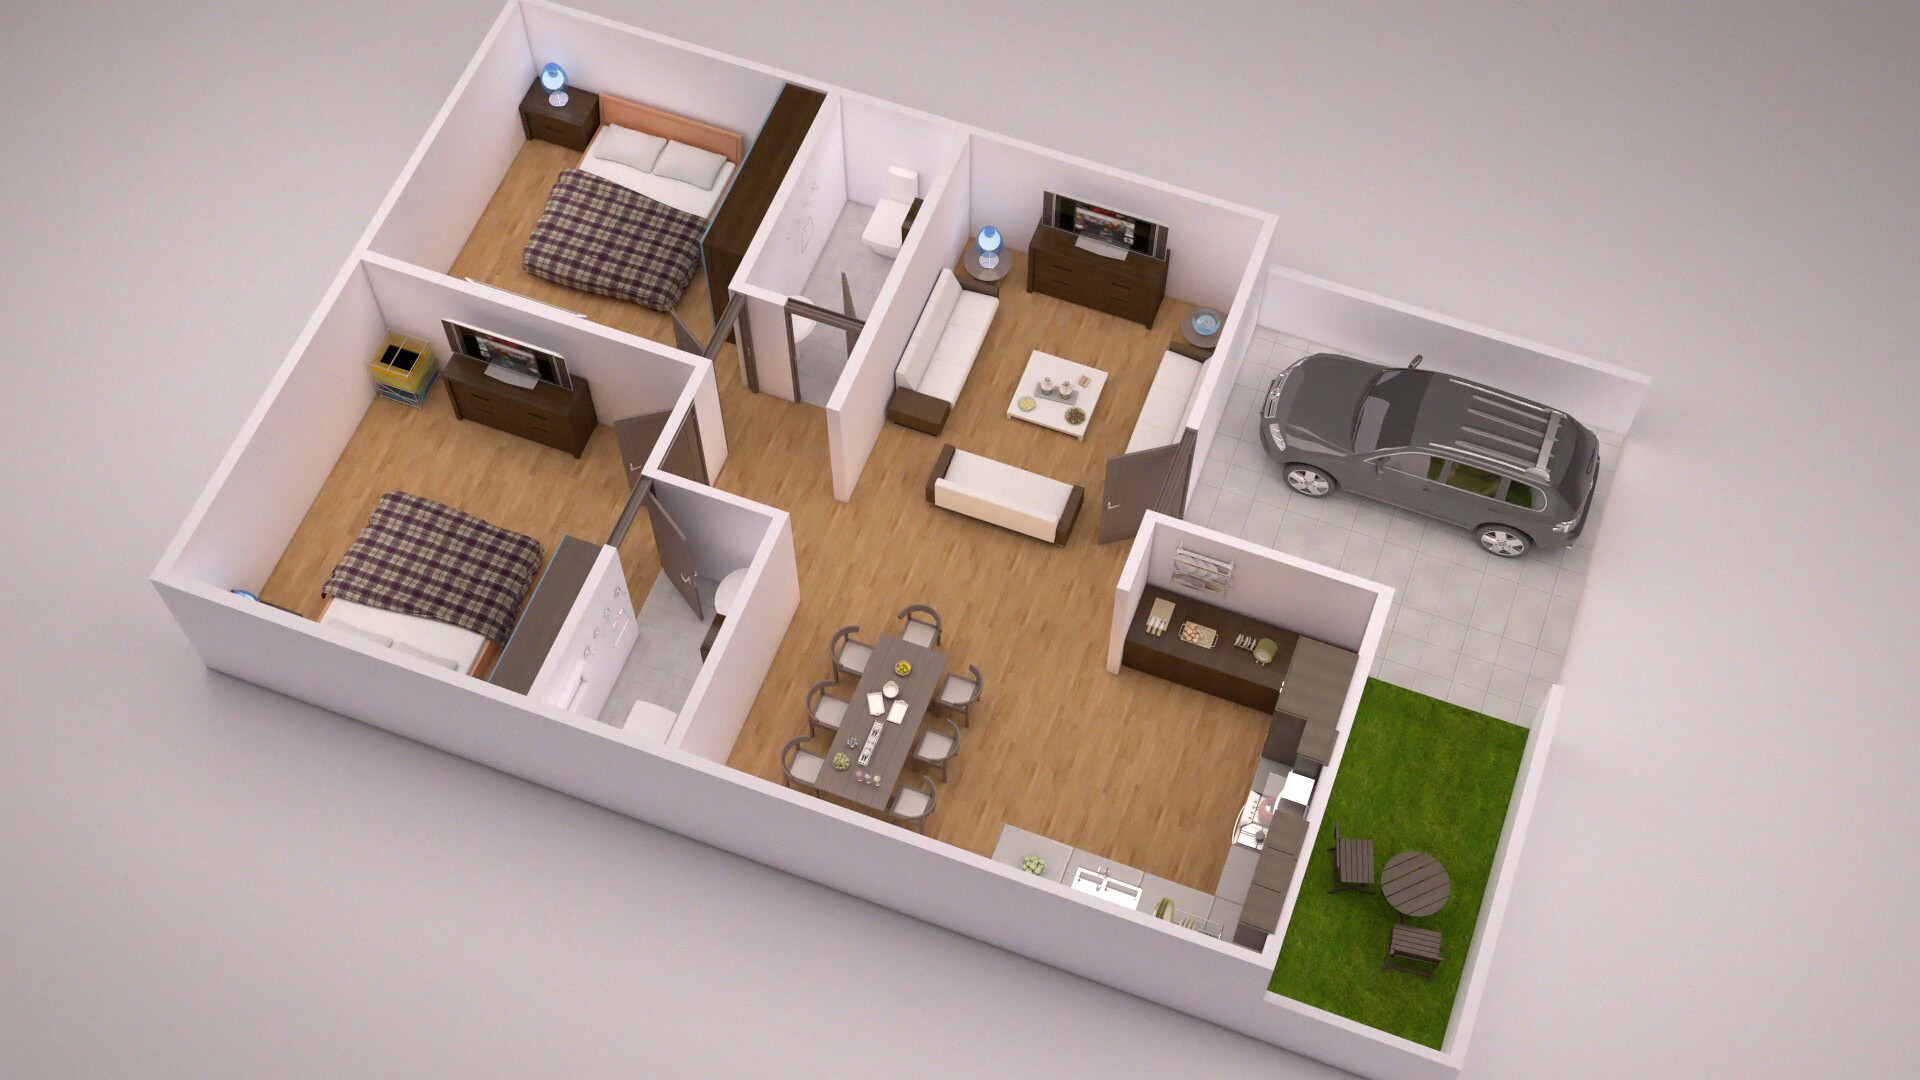 Get 31 32 2bhk 3d Home Design Plan Images Png Baju Kurung Ketat